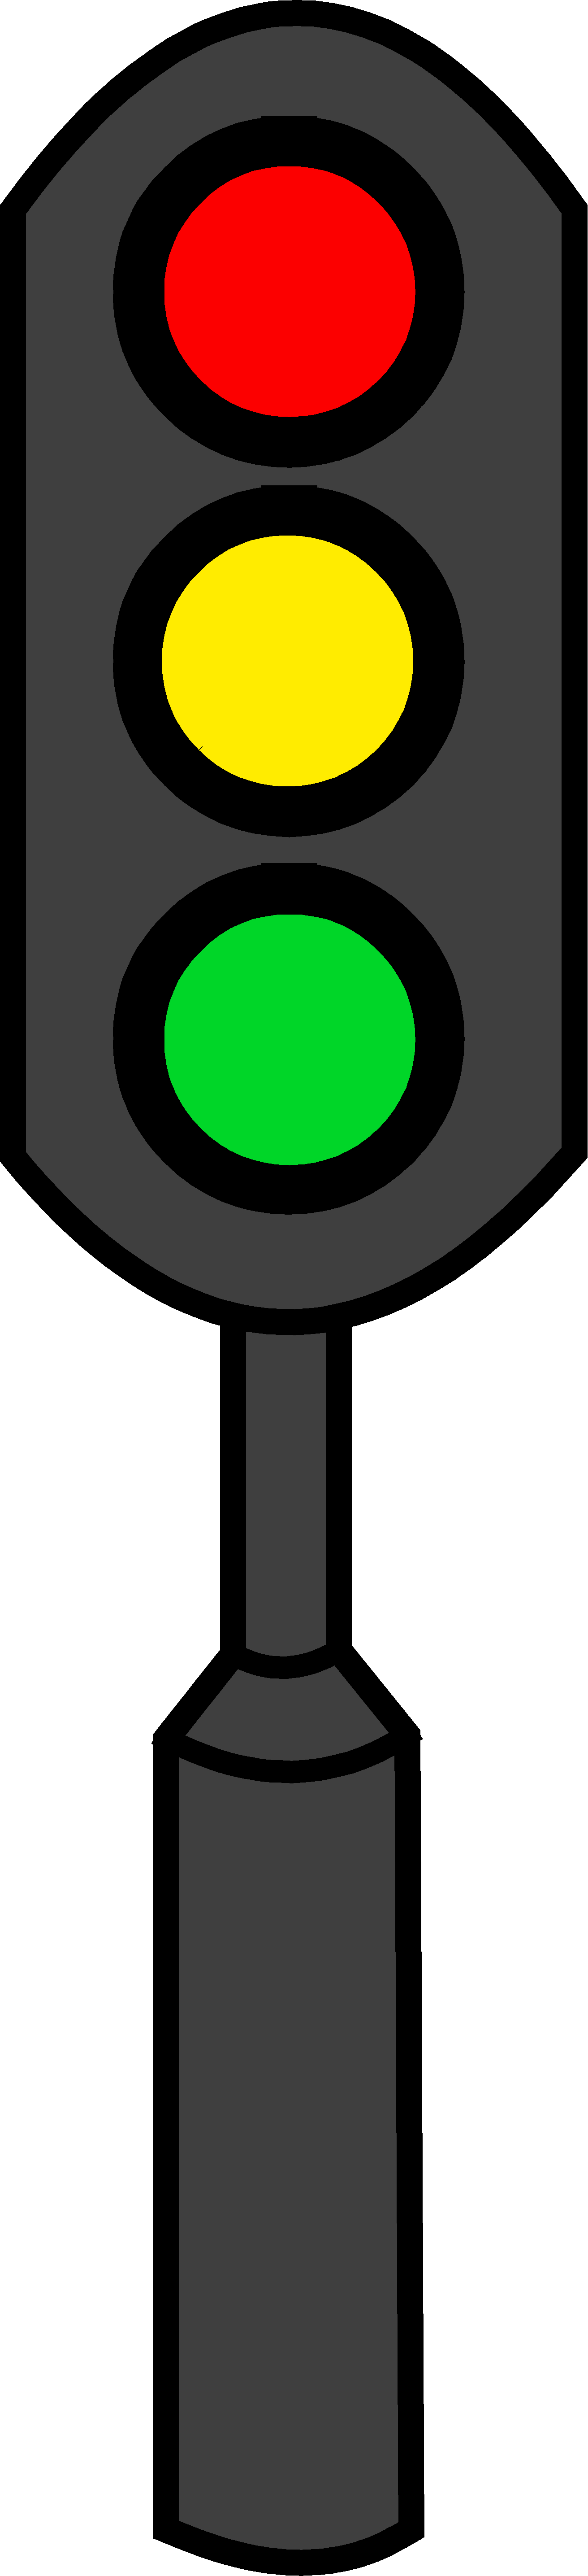 Traffic Light Logo - ClipArt Best